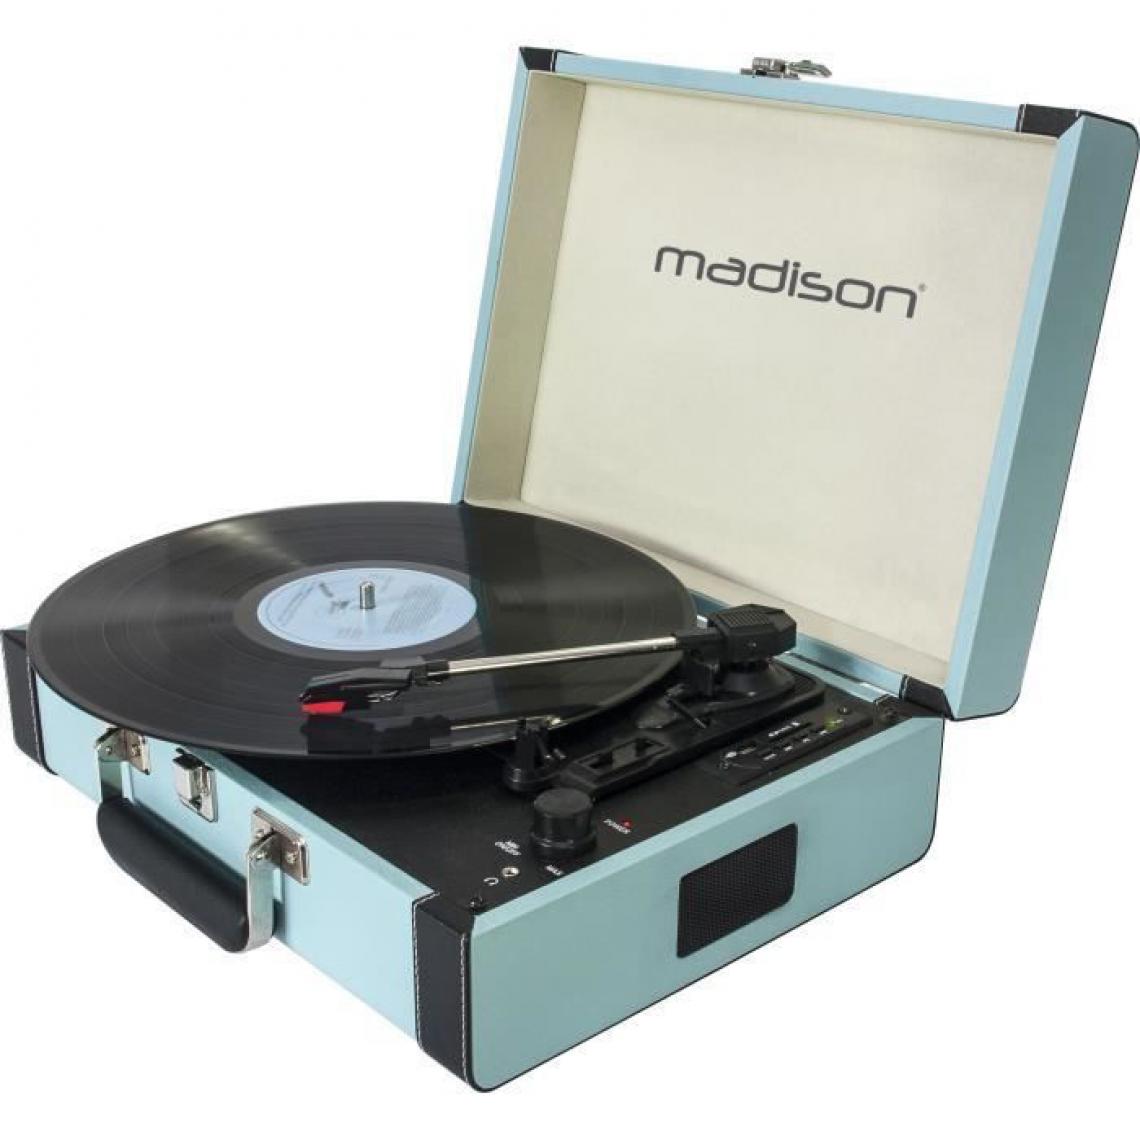 Madison Montres - MADISON 10-5550MA Mallette tourne-disques - Bluetooth, USB, SD + fonction denregistrement - Bleu - Platine